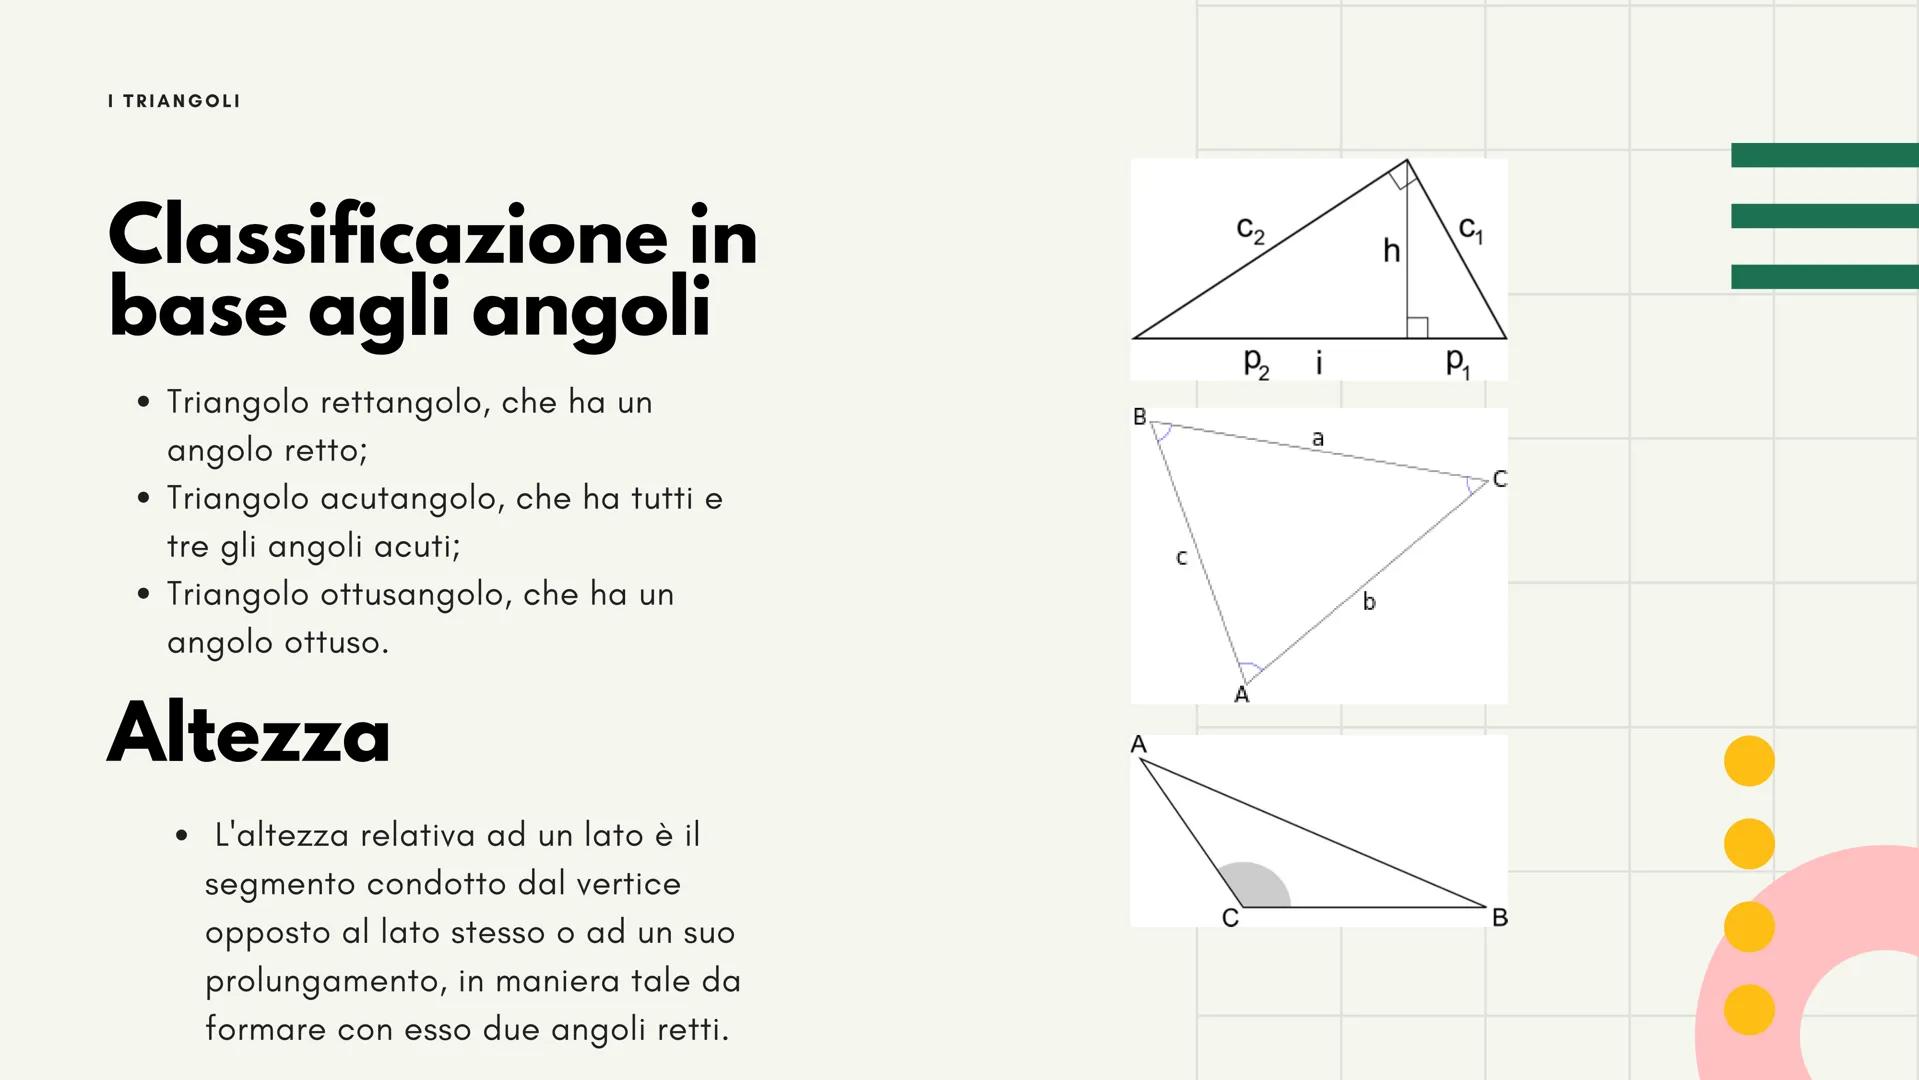 11
I triangoli
Luce Ruffato I TRIANGOLI
Introduzione
Un triangolo è un poligono con tre lati,
tre vertici, tre angoli, tre altezze, tre
medi